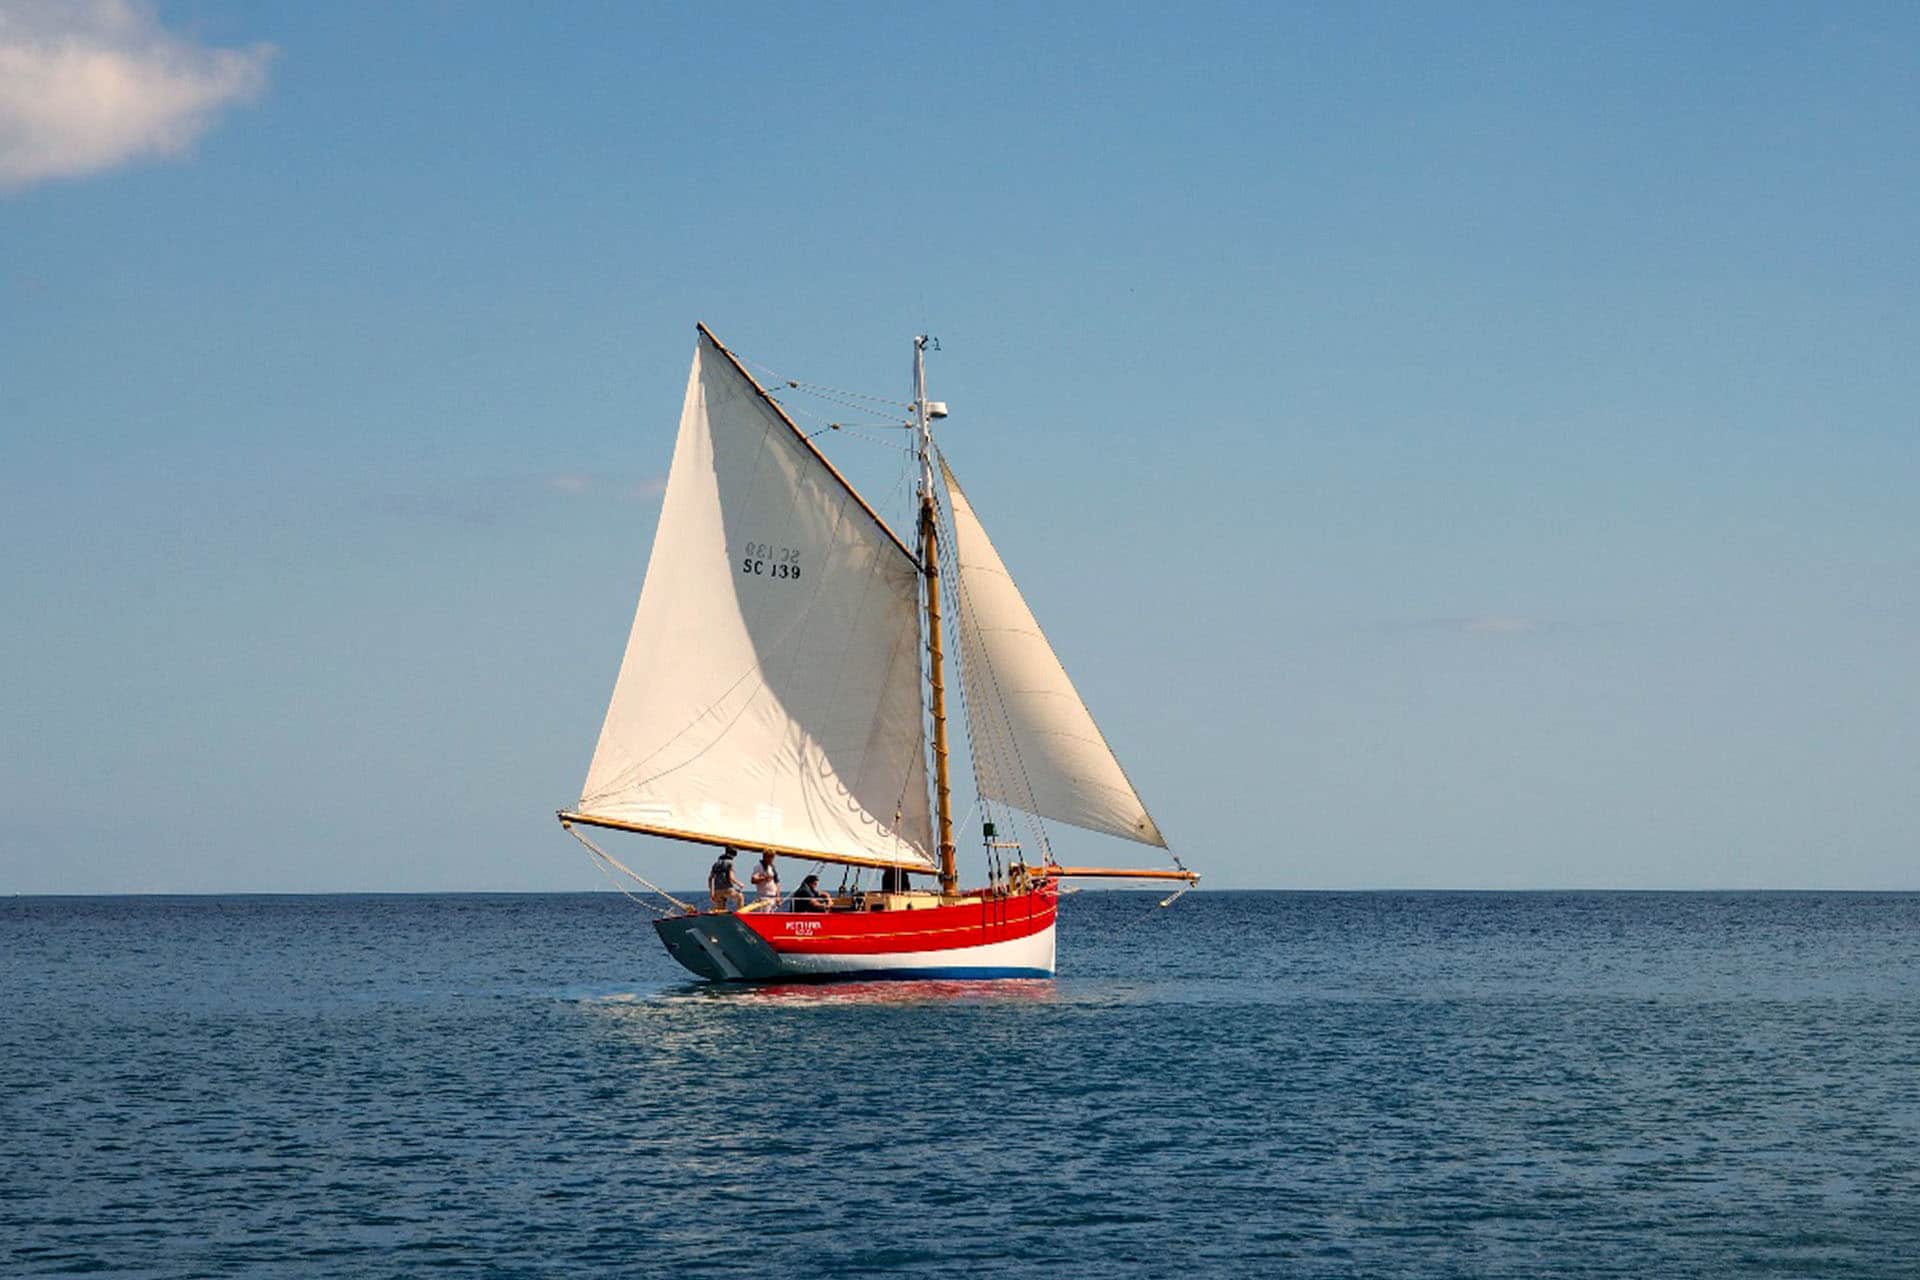 Pettifox sailing